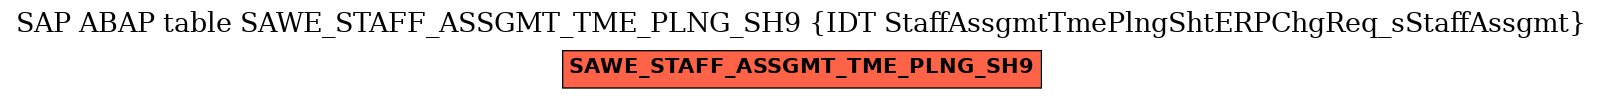 E-R Diagram for table SAWE_STAFF_ASSGMT_TME_PLNG_SH9 (IDT StaffAssgmtTmePlngShtERPChgReq_sStaffAssgmt)